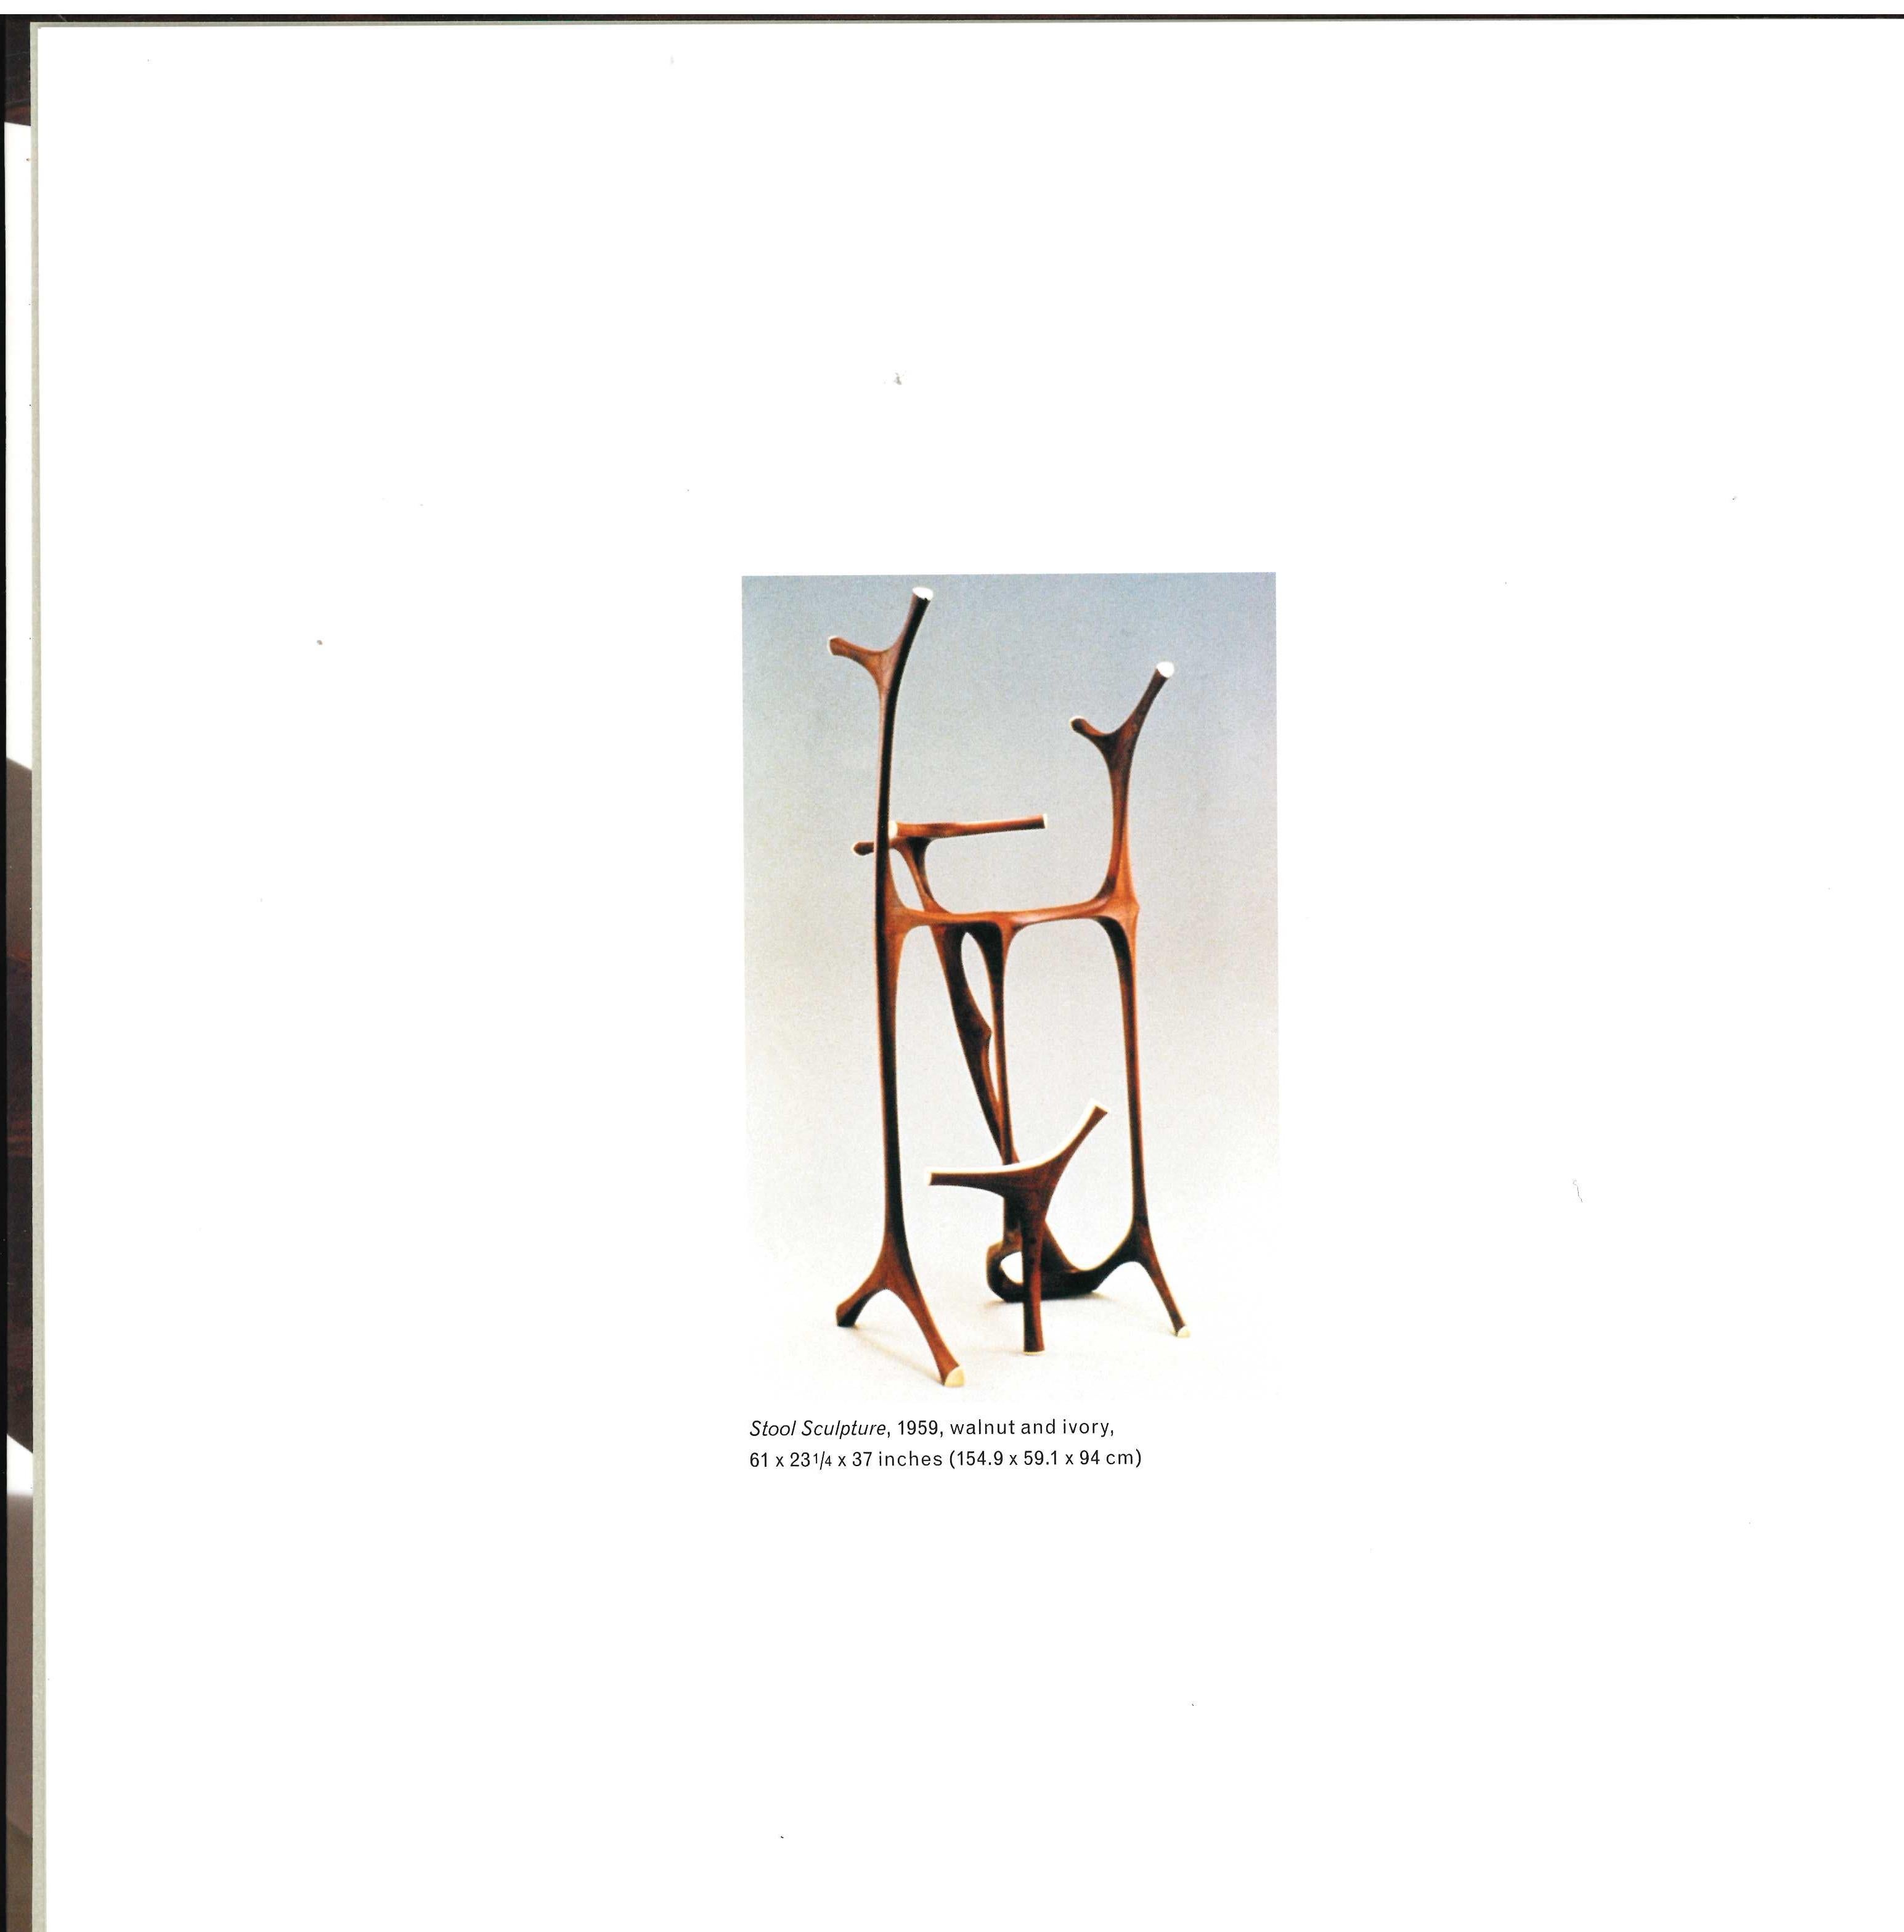 Catalogue d'exposition avec Barry Friedman.
Wendell Castle a été à l'avant-garde du design de mobilier américain pendant un demi-siècle, connu pour son utilisation sophistiquée des matériaux et des processus techniques. Ce livre est une collection